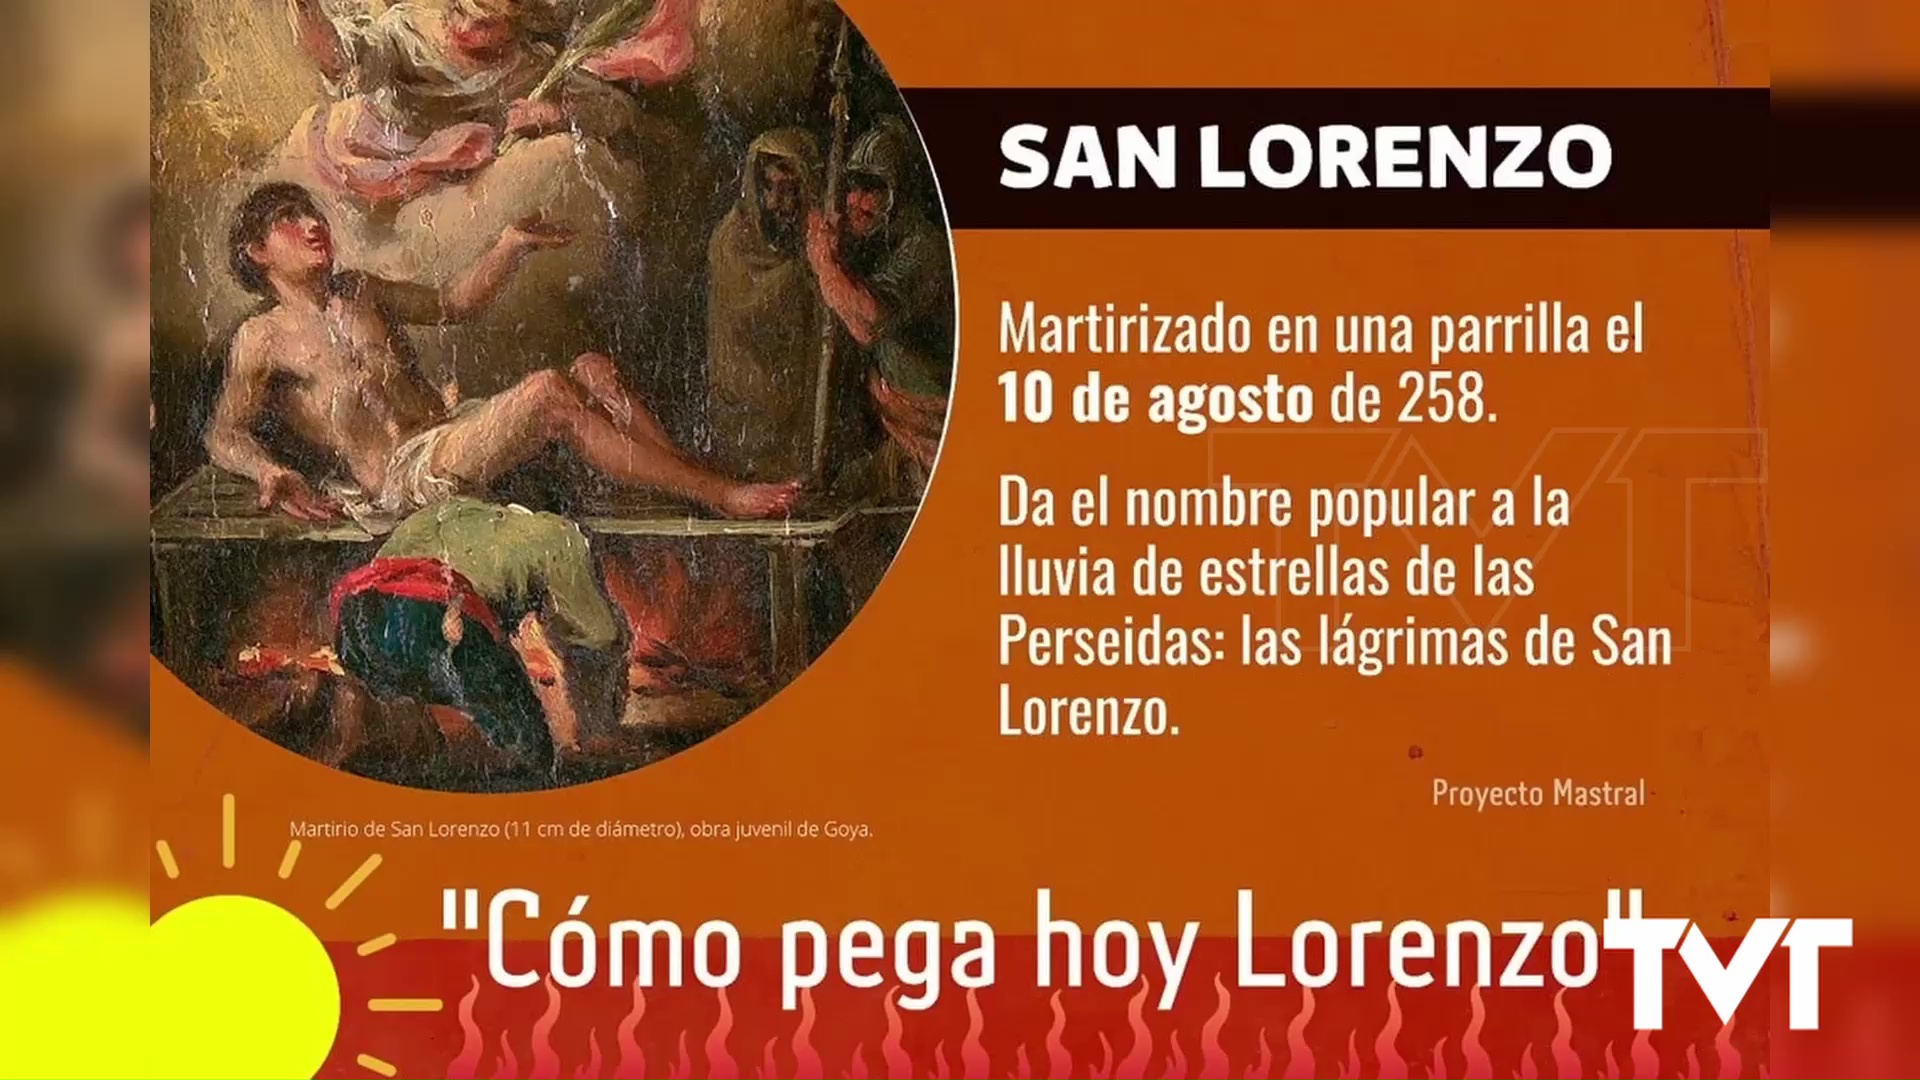 Imagen de Curiosidades: El día más cálido del verano coincide con San Lorenzo, martirizado en una parrilla